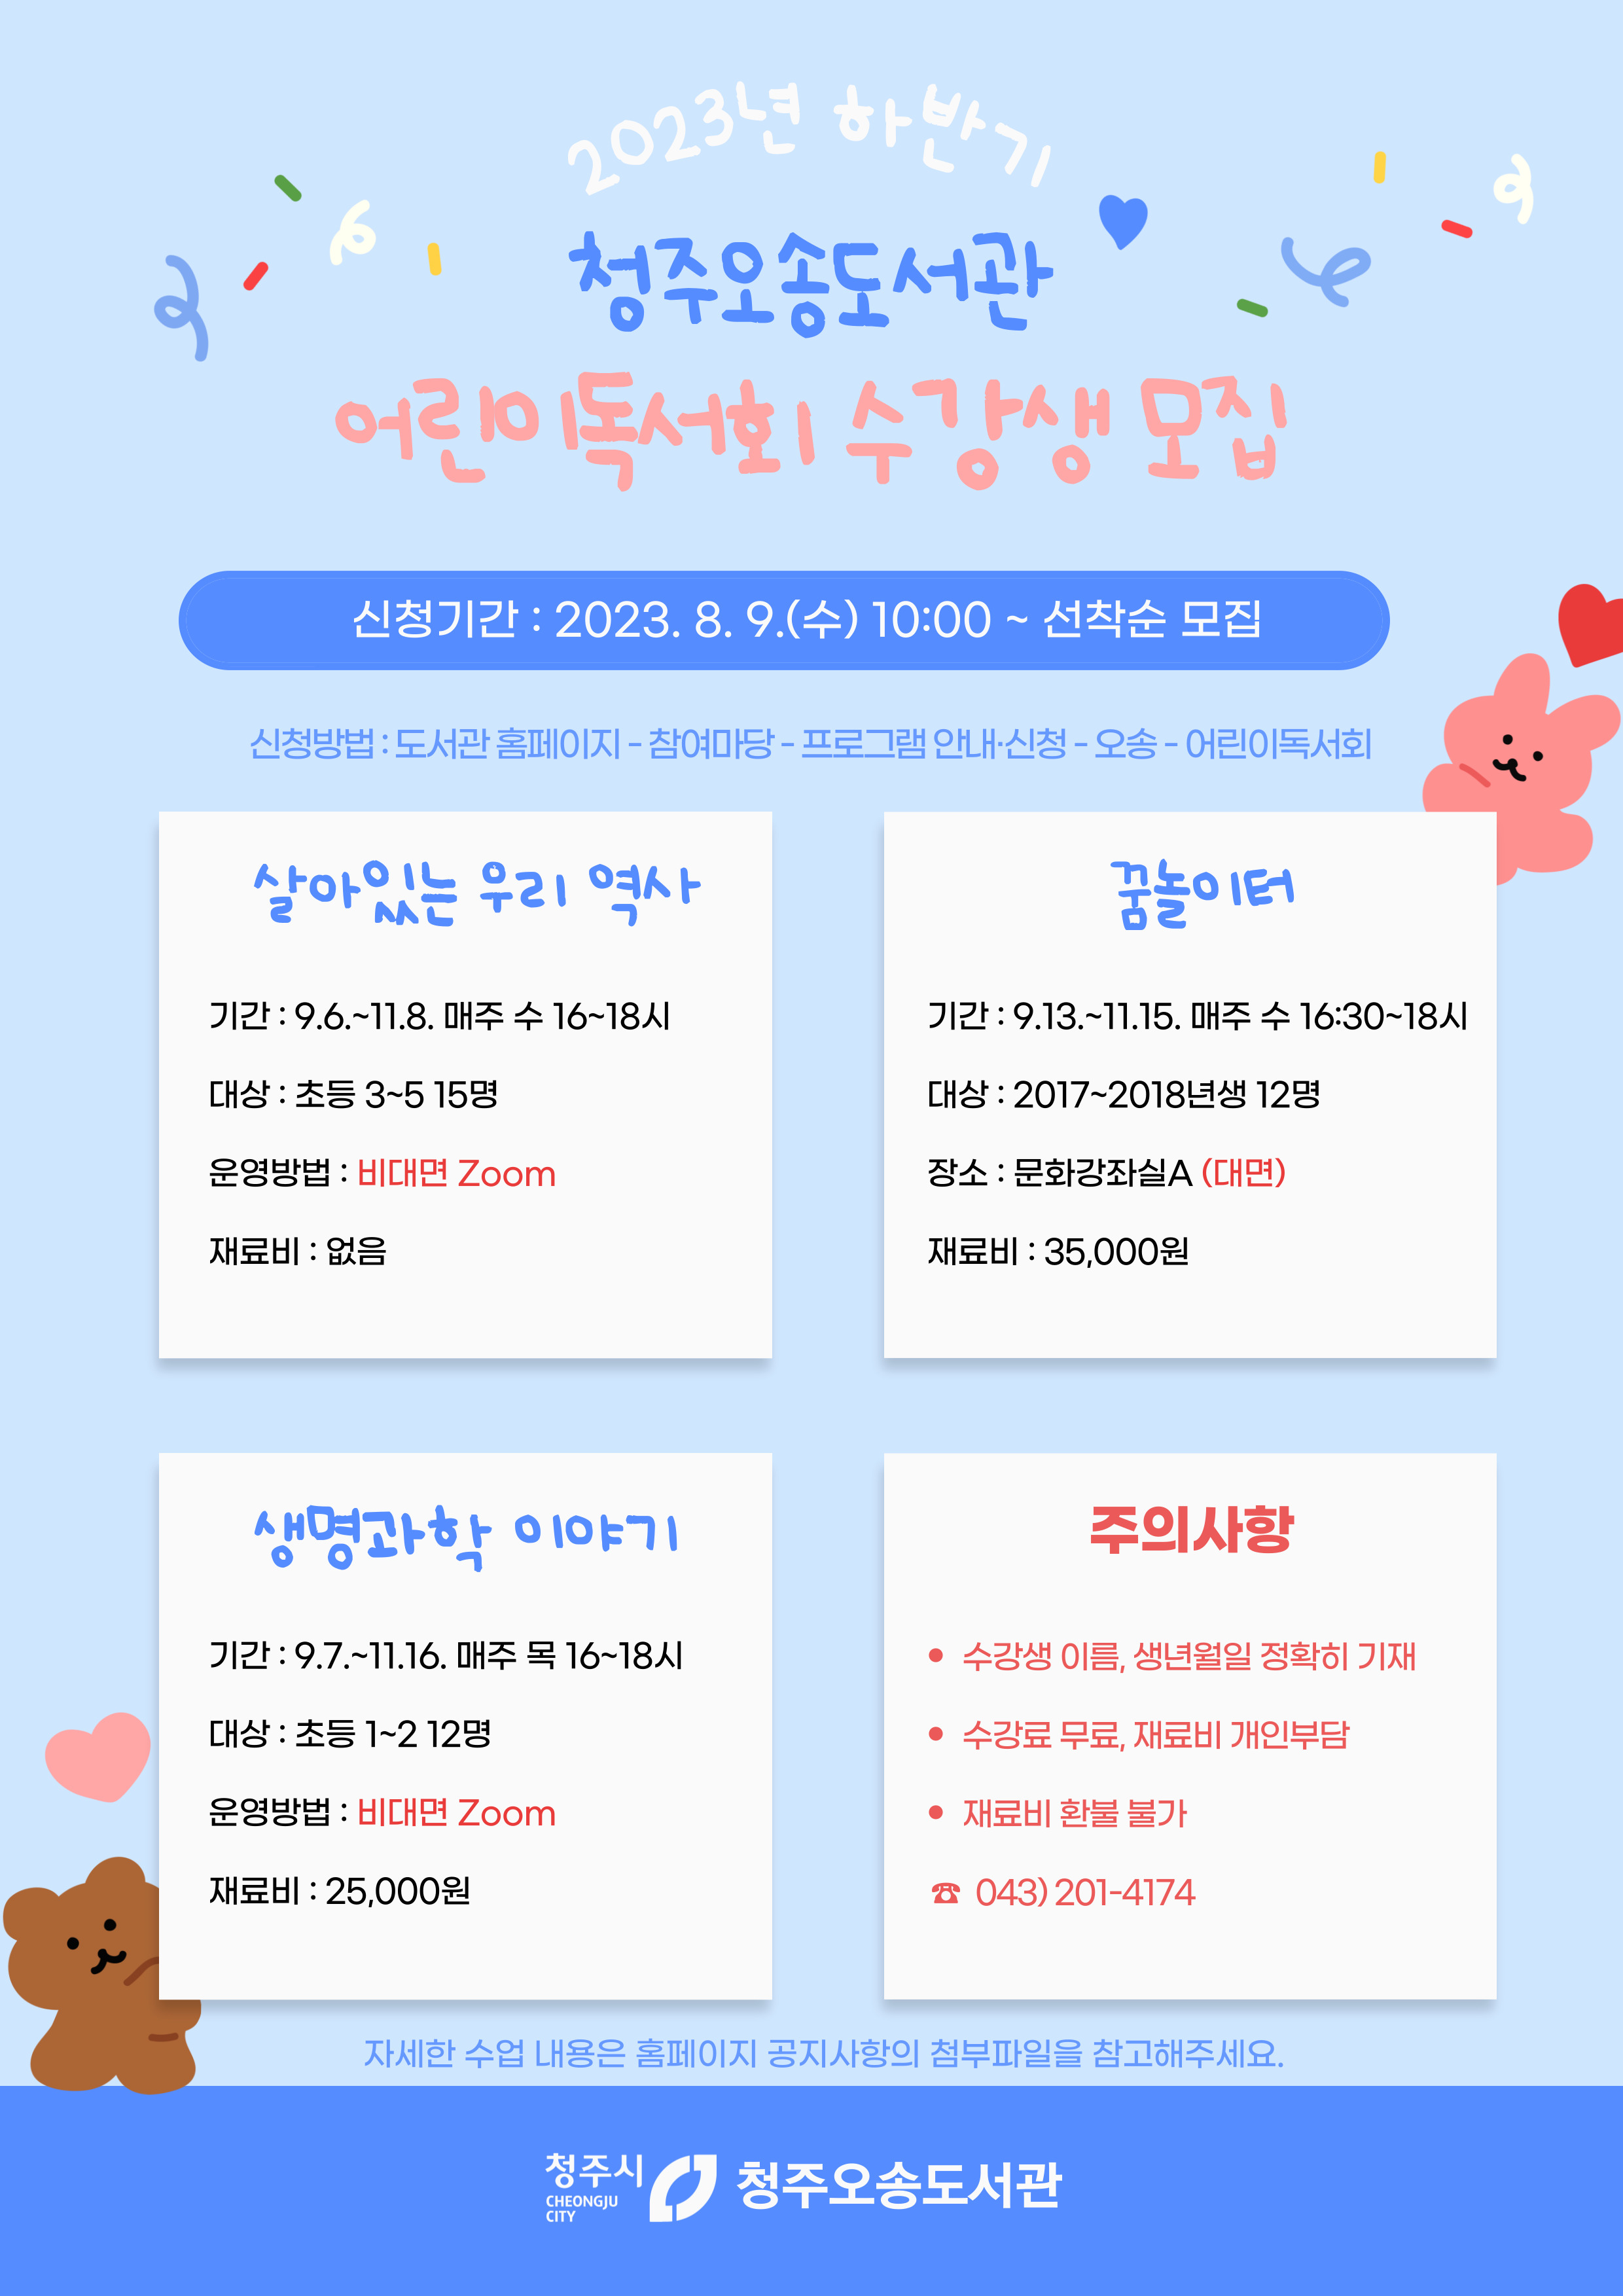 [오송도서관]2023년 하반기 어린이독서회 수강생 모집